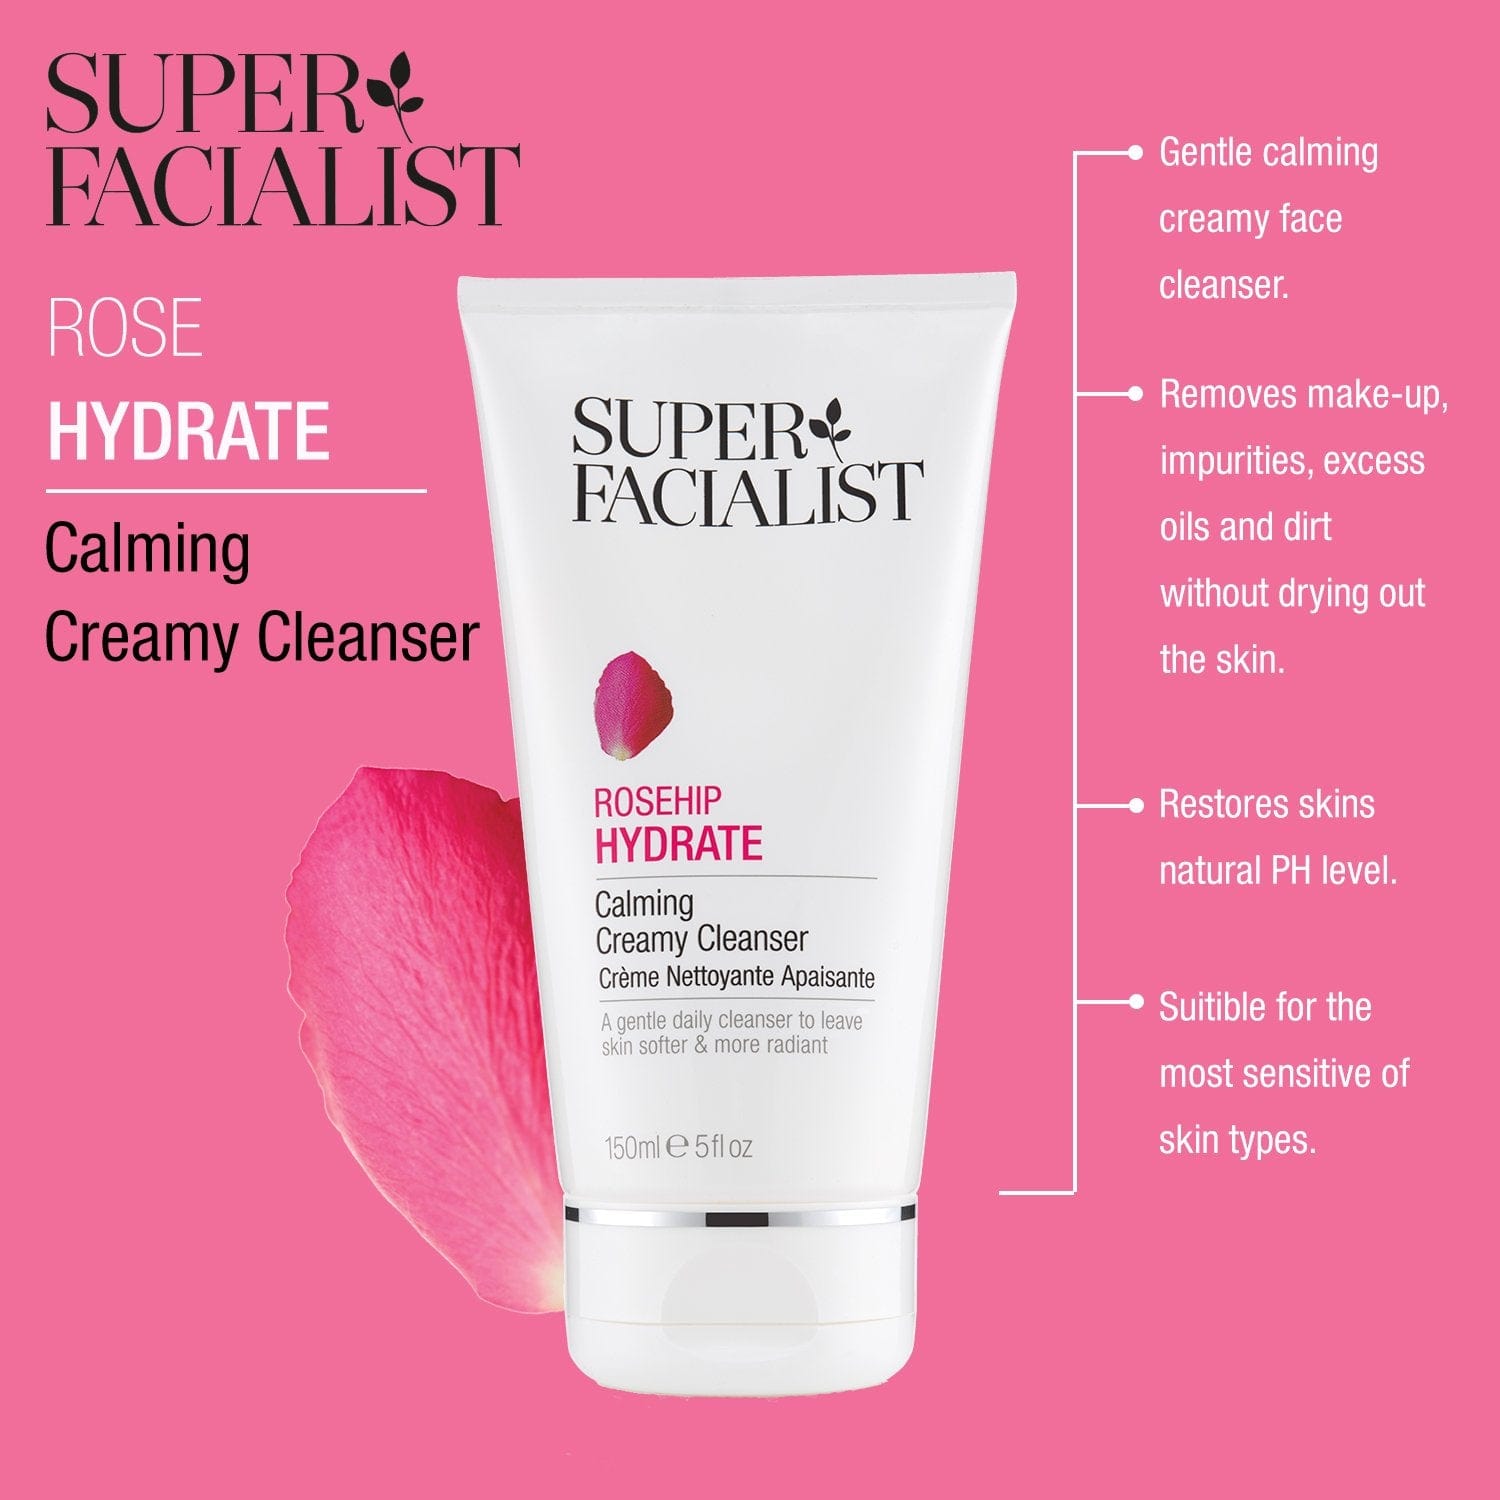 Super Facialist Rose Hydrate Calming Creamy Cleanser 150ml